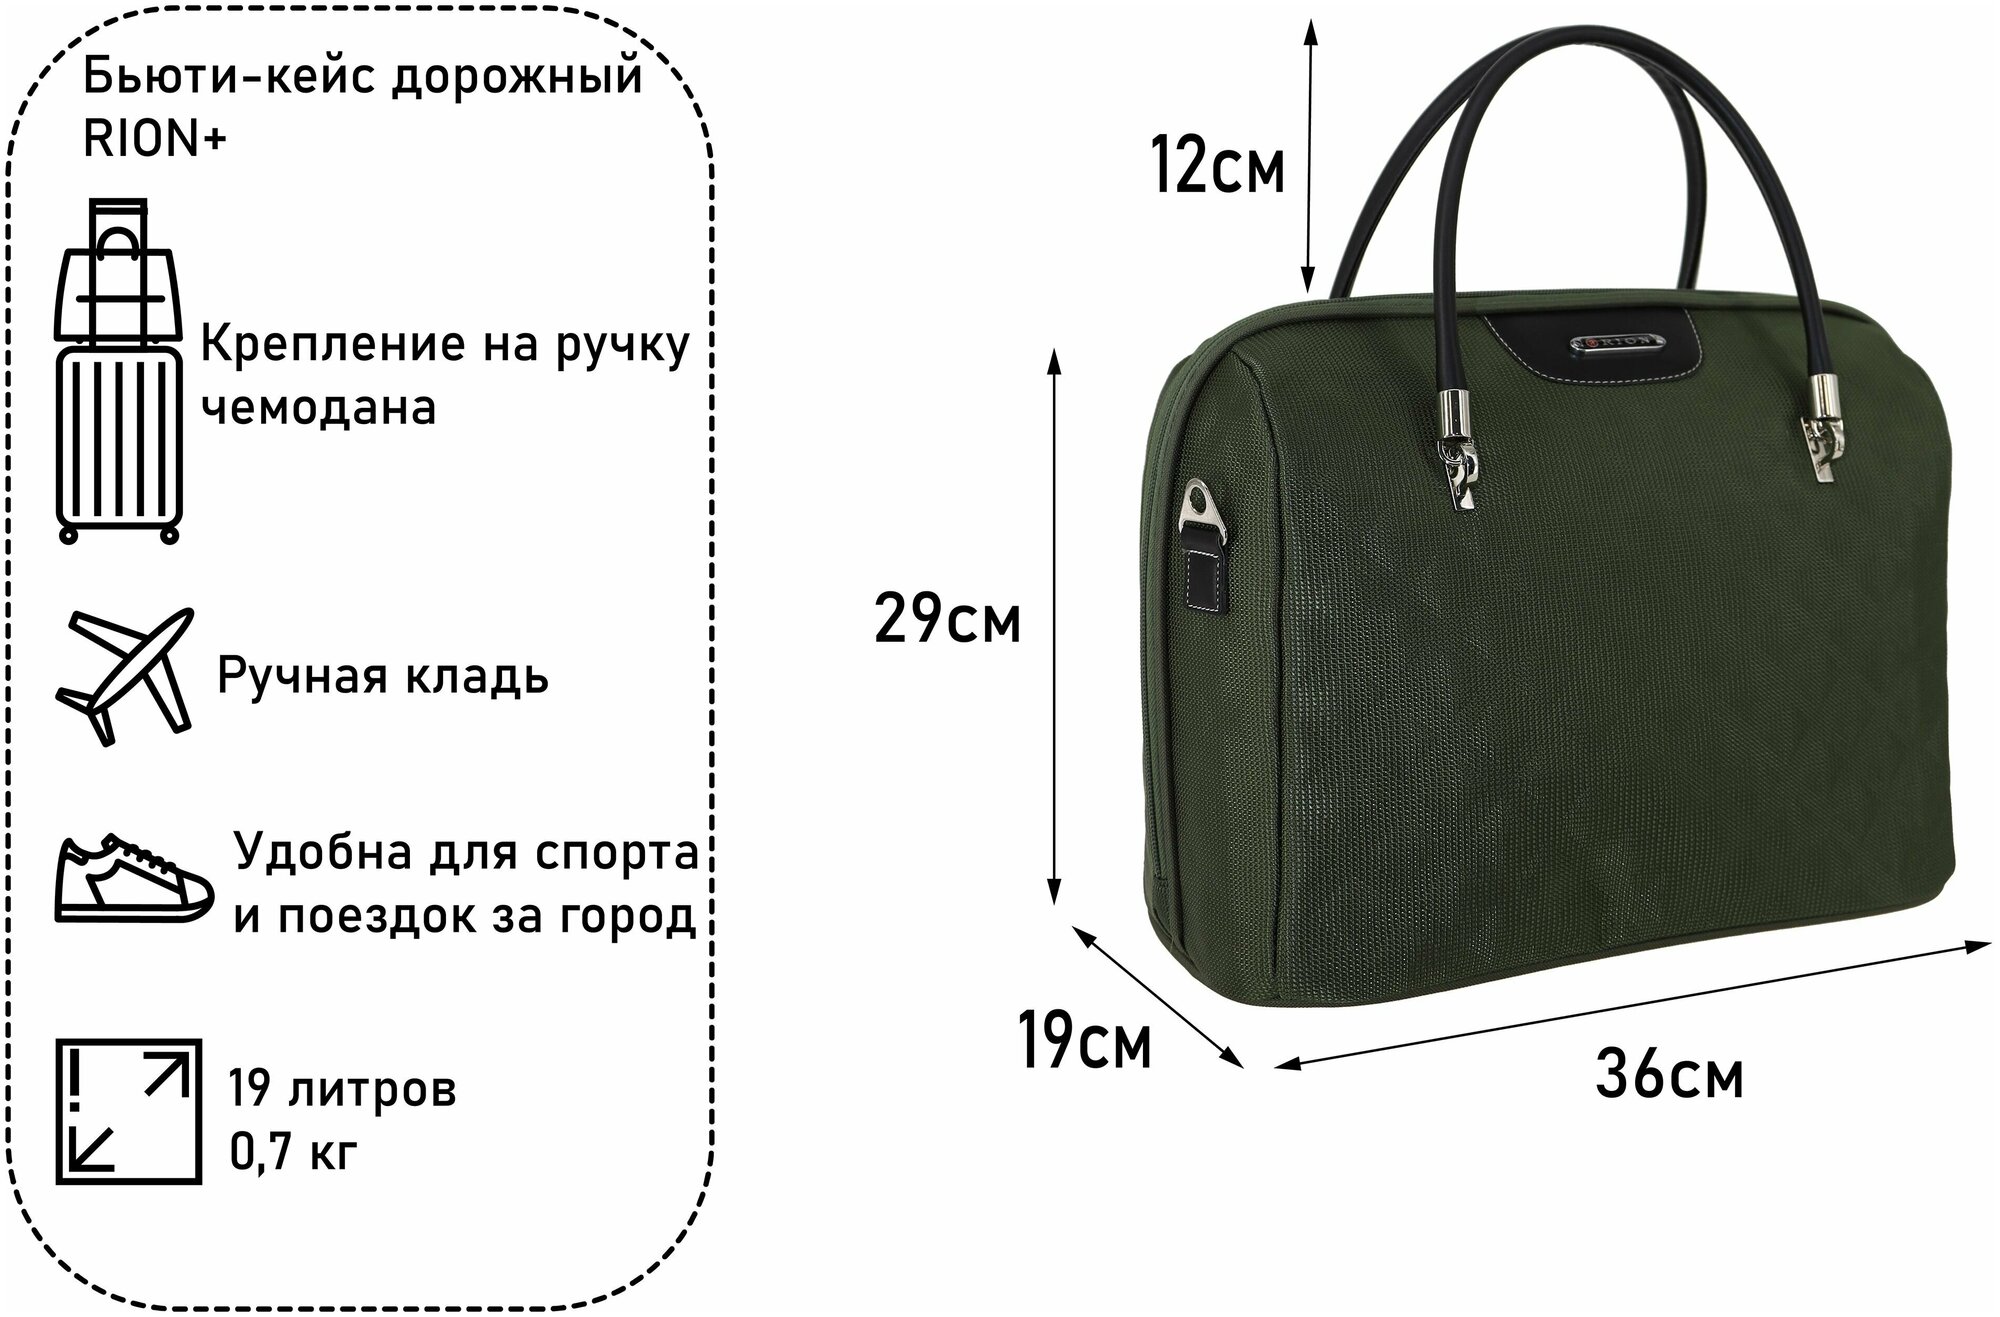 Дорожная сумка с ремнем на ручку чемодана Рион+ (RION+) / ручная кладь для самолета / саквояж , R240, Тканевая, 20 литров, хаки-ромб - фотография № 2